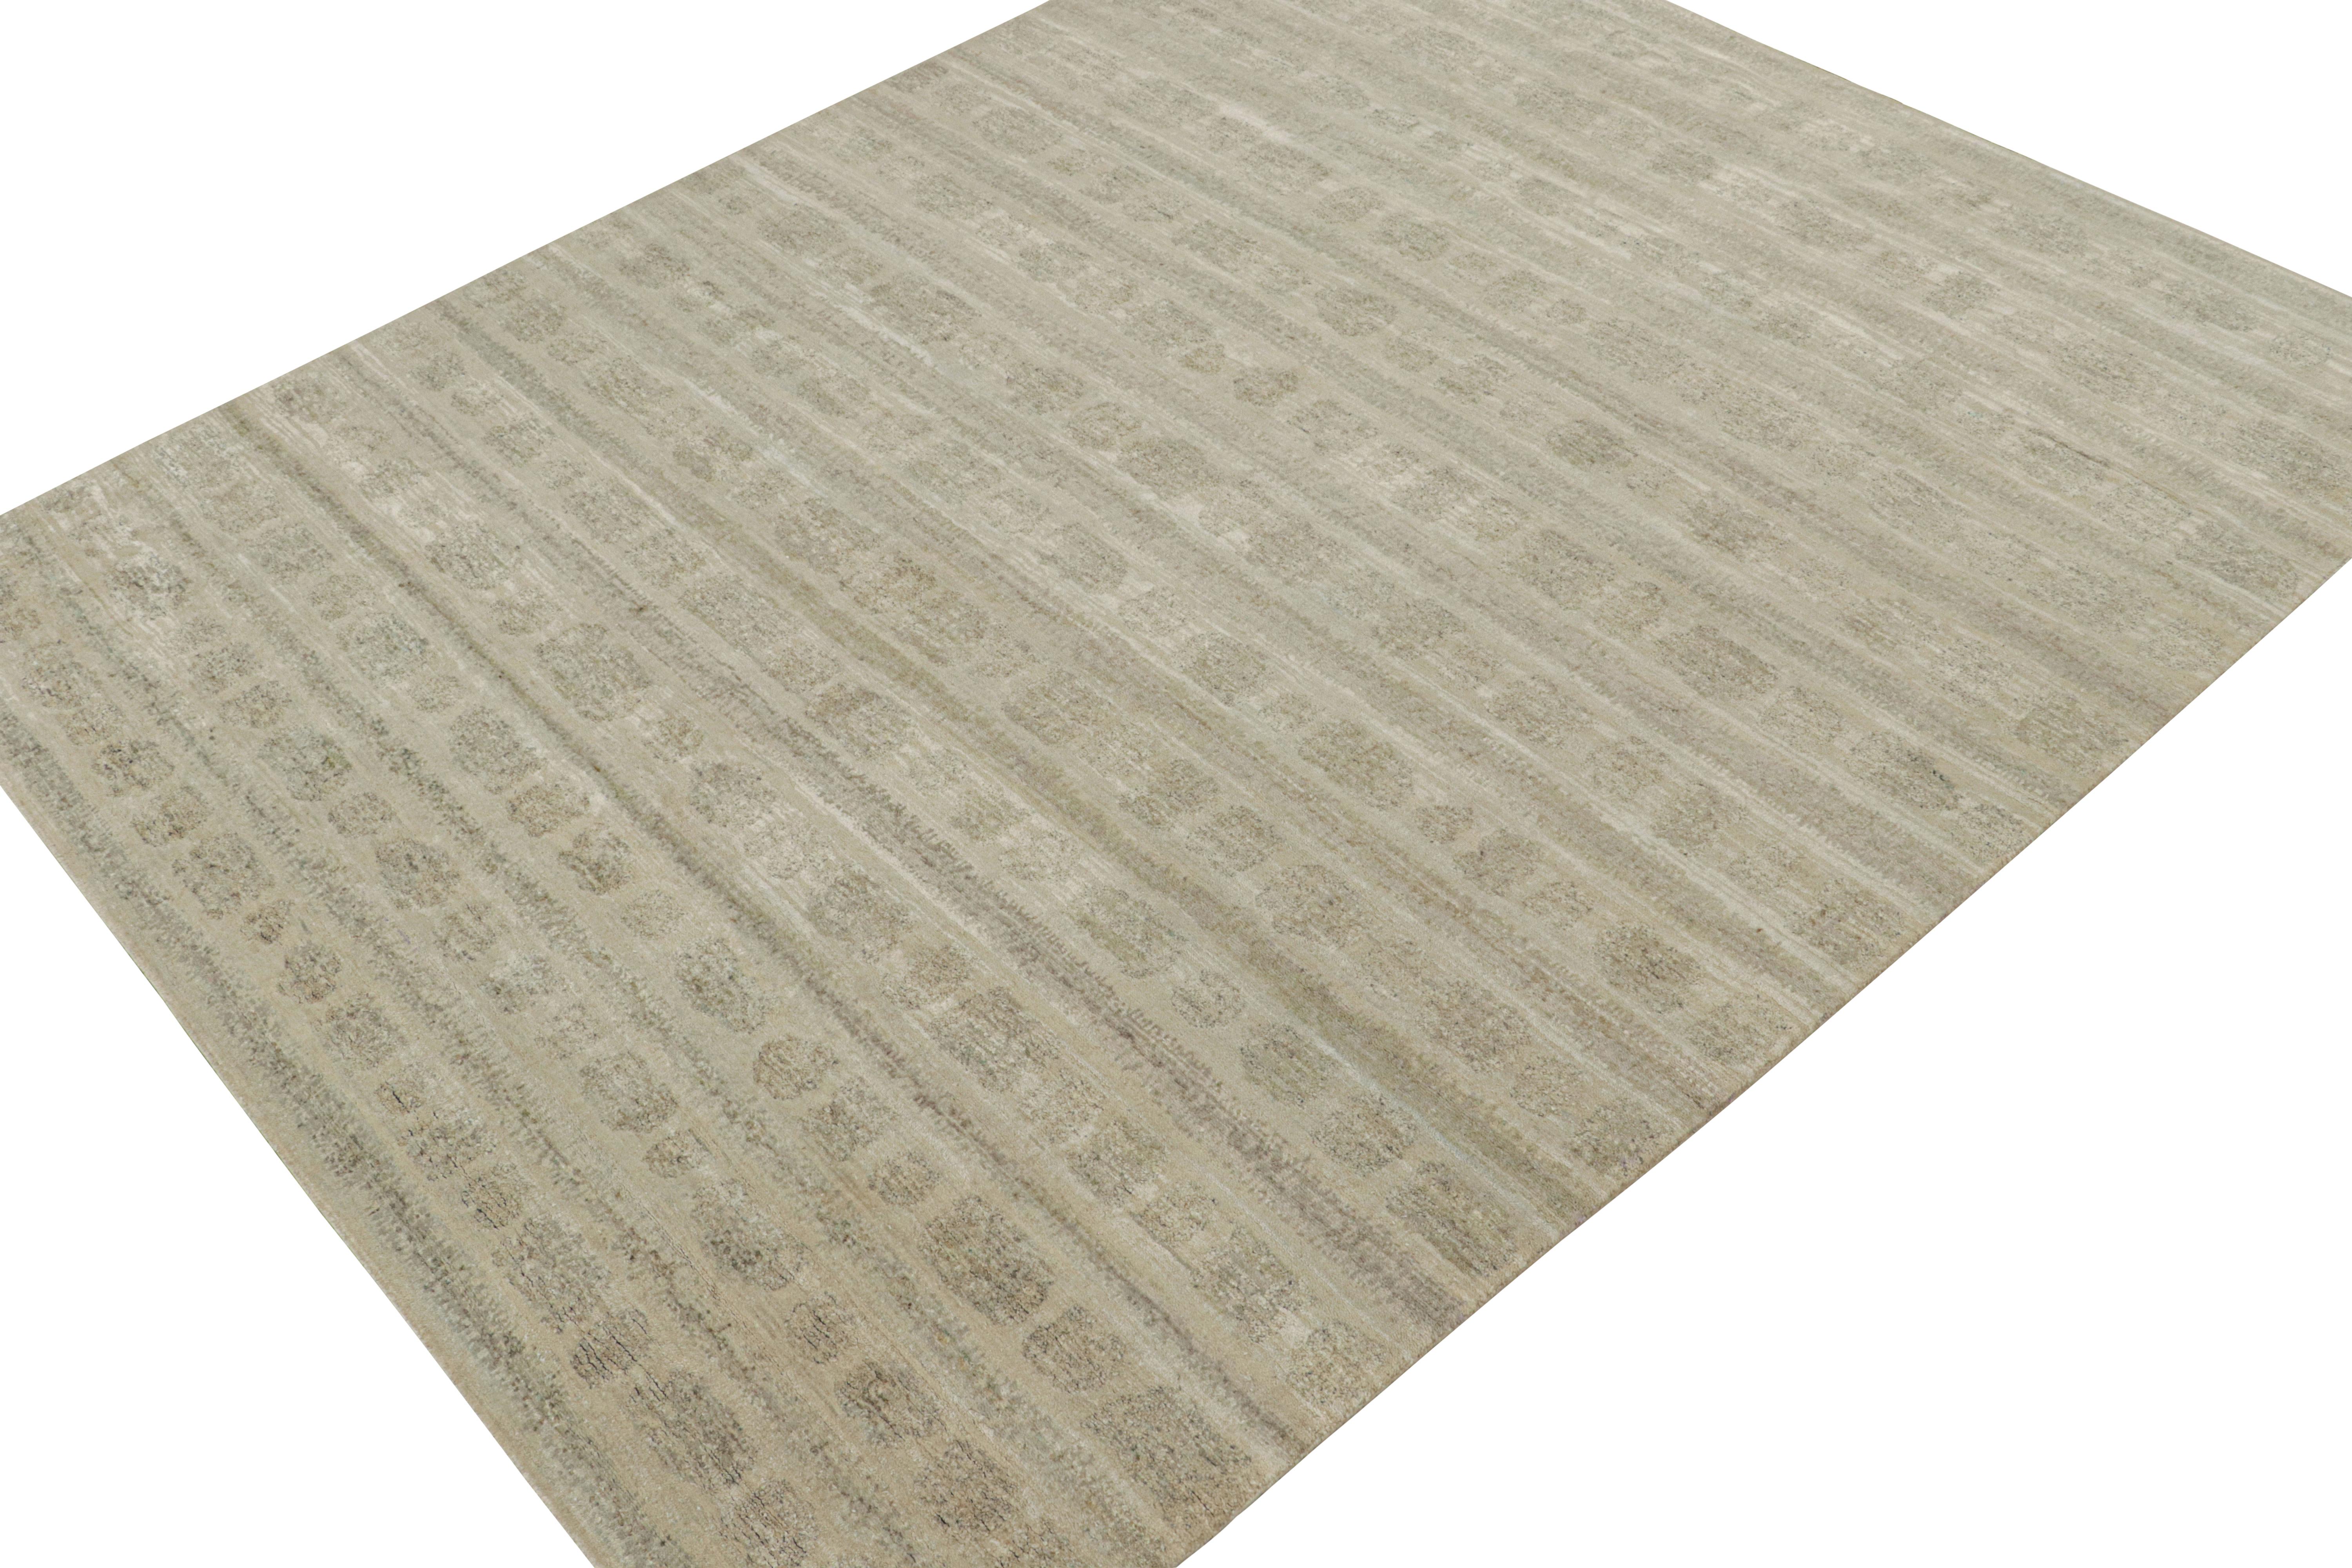 Dieser abstrakte Teppich im Format 9x11 ist eine kühne Ergänzung der Modern-Teppichkollektion von Rug & Kilim. Handgeknüpft aus Wolle und Seide, bevorzugt das Design einen kreativen Gebrauch von neutralen Tönen in einem einzigartigen